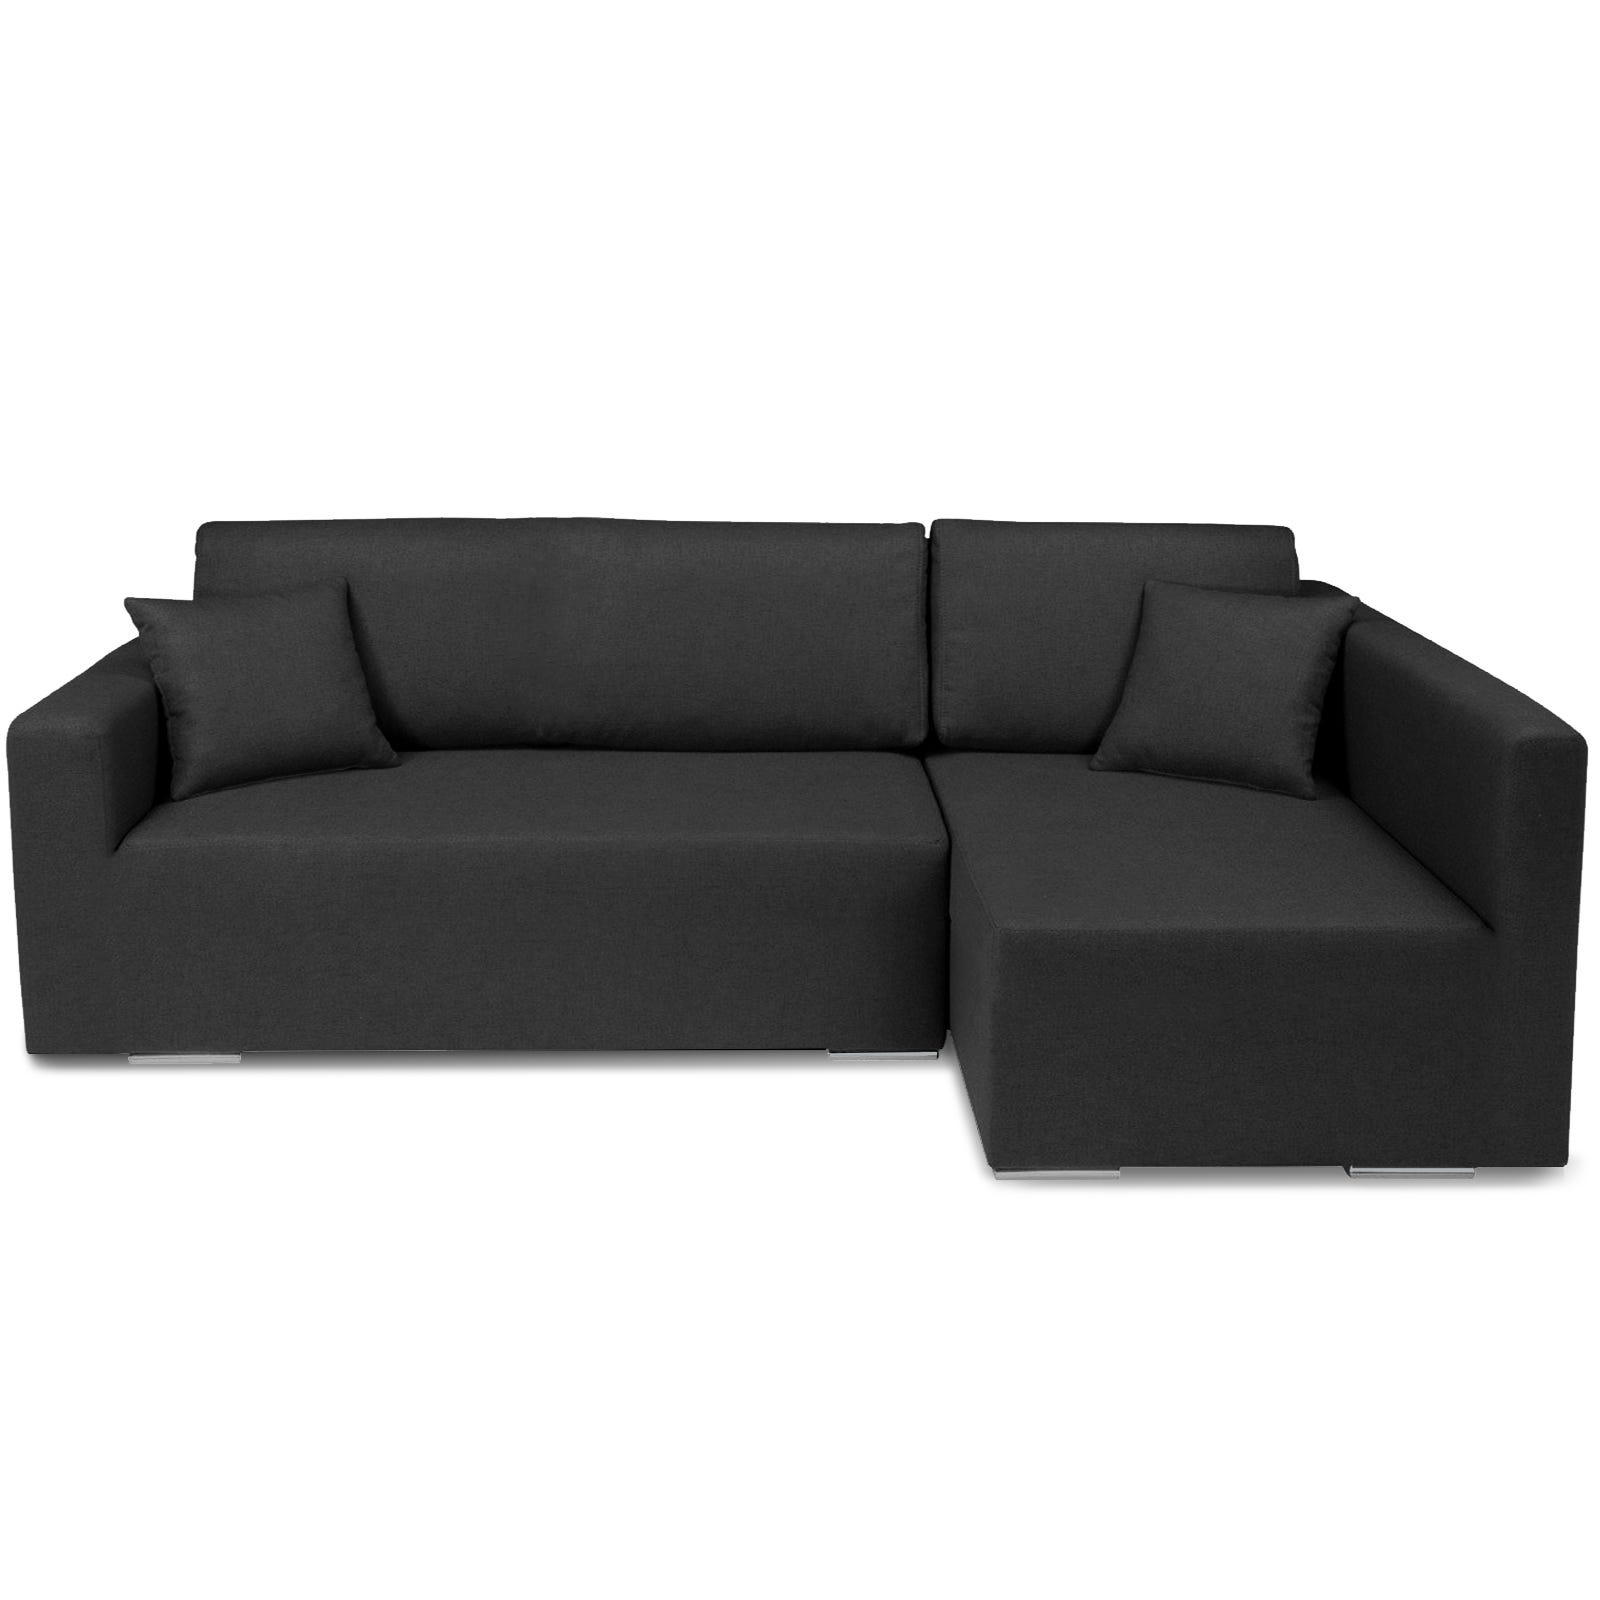 Copridivano Fodera elastica elasticizzata per divano 3 posti nero